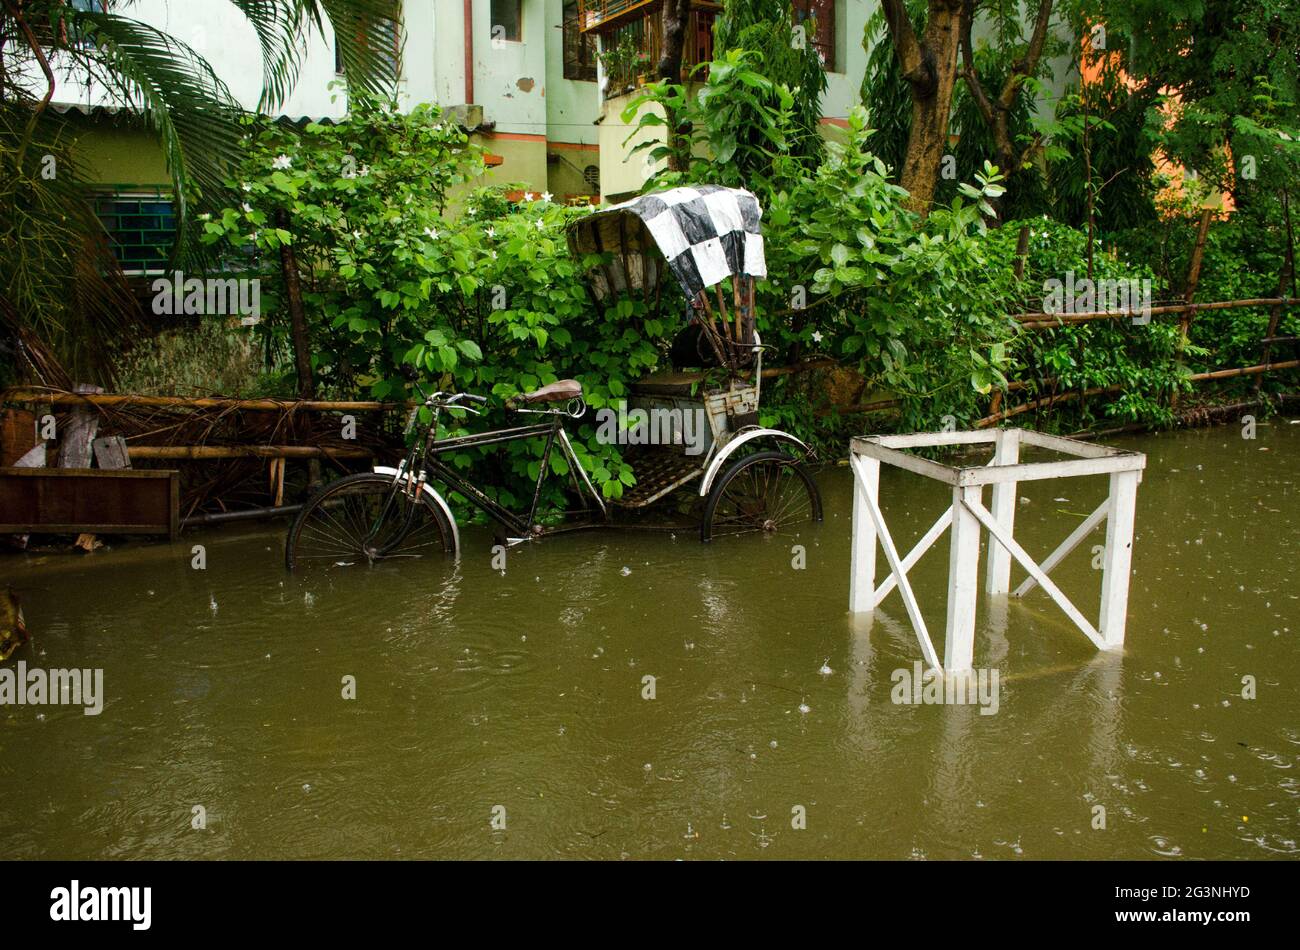 Le strade di Kolkata si sono sommerse in giornate di pioggia intensa. Un risciò è affondato nell'acqua piovana. Foto Stock